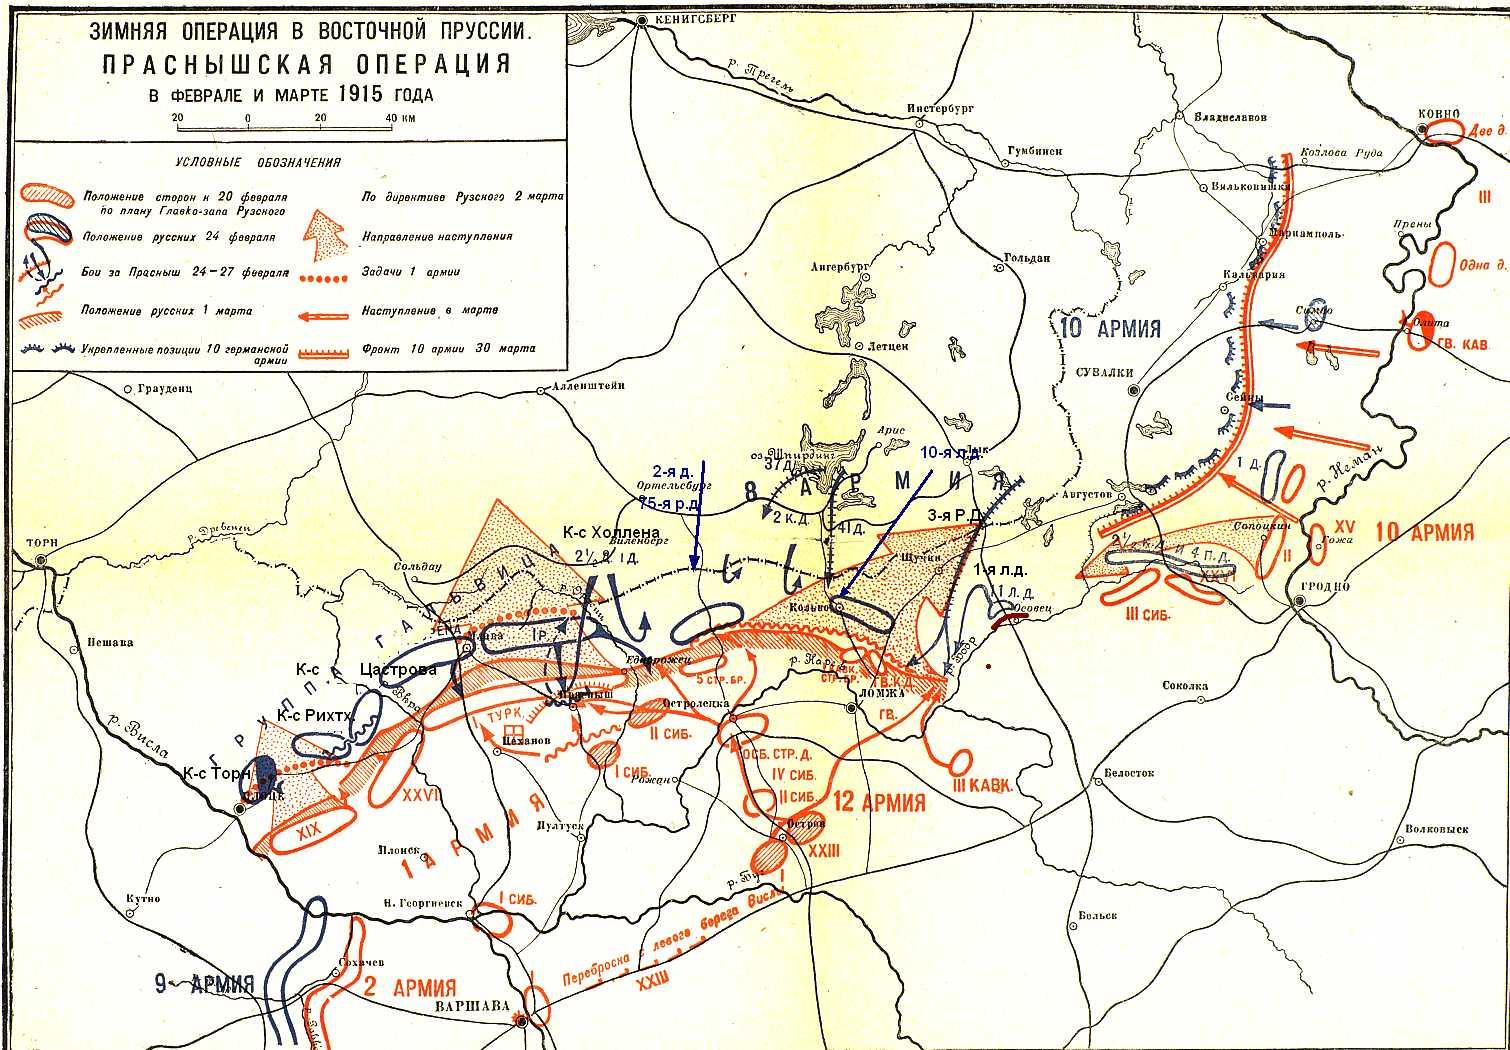 Общая схема Ломжинско - Праснышской операции (февраль - март 1915 года), включая 2-е Праснышское сражение